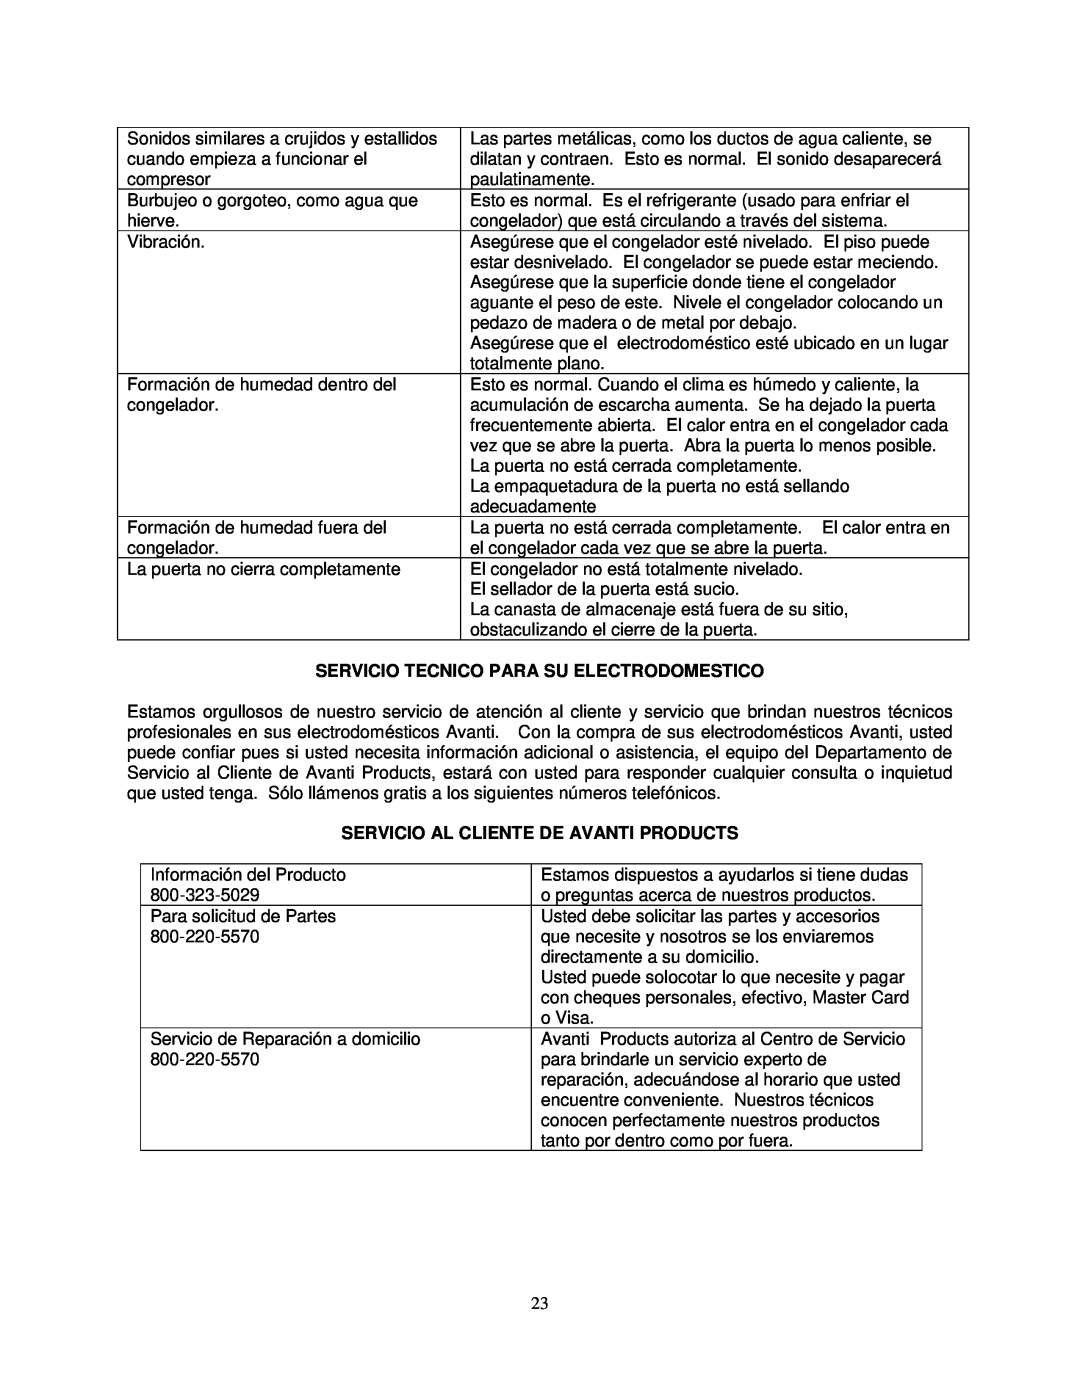 Avanti CF268G instruction manual Servicio Tecnico Para Su Electrodomestico, Servicio Al Cliente De Avanti Products 